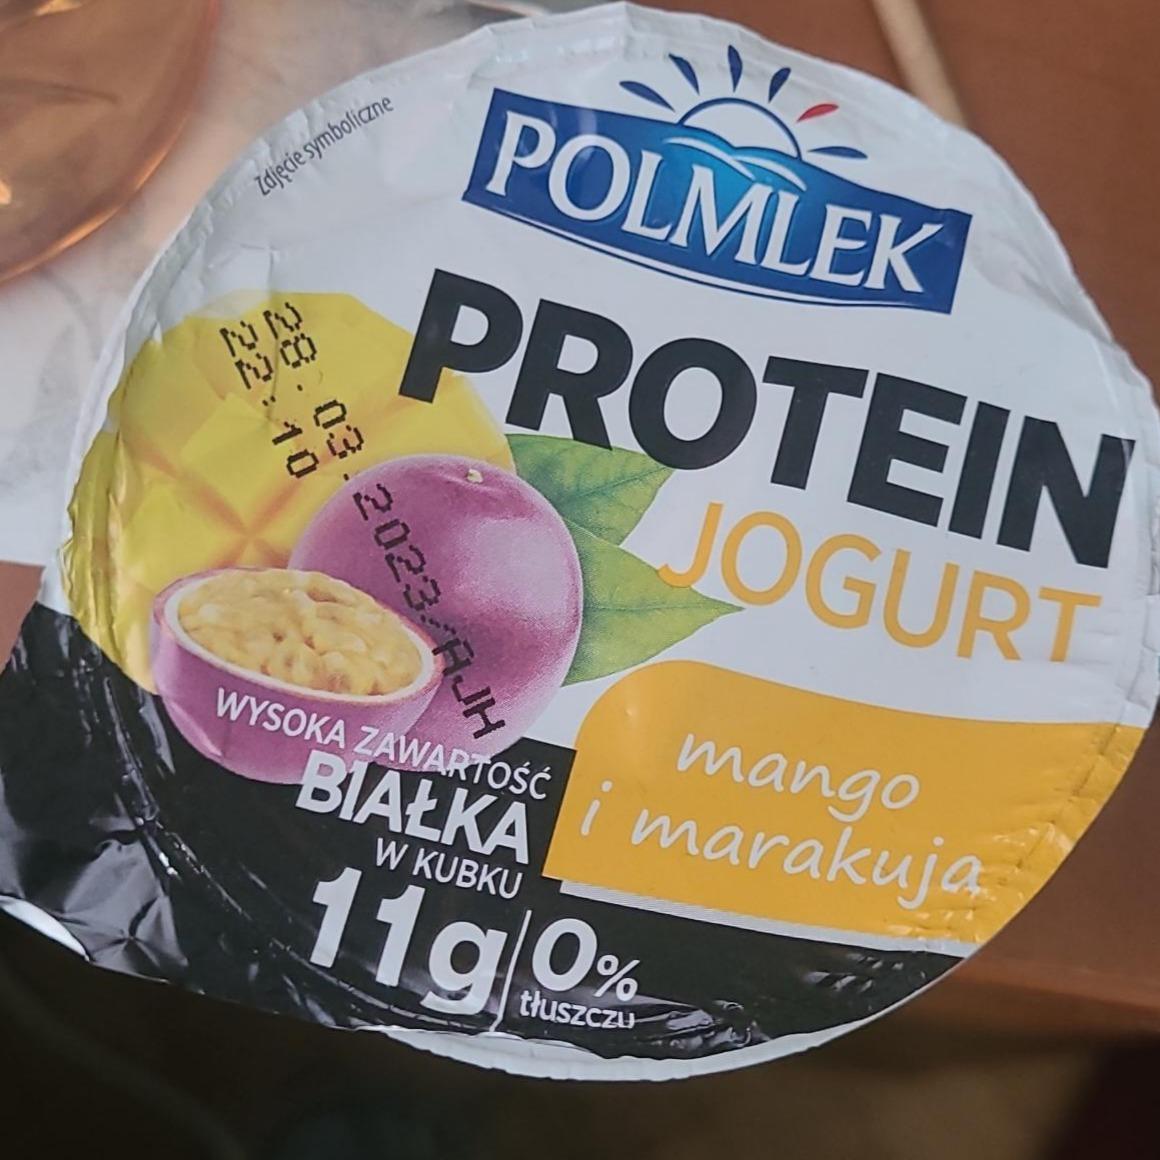 Фото - протеиновый йогурт манго и маракуйя Polmlek